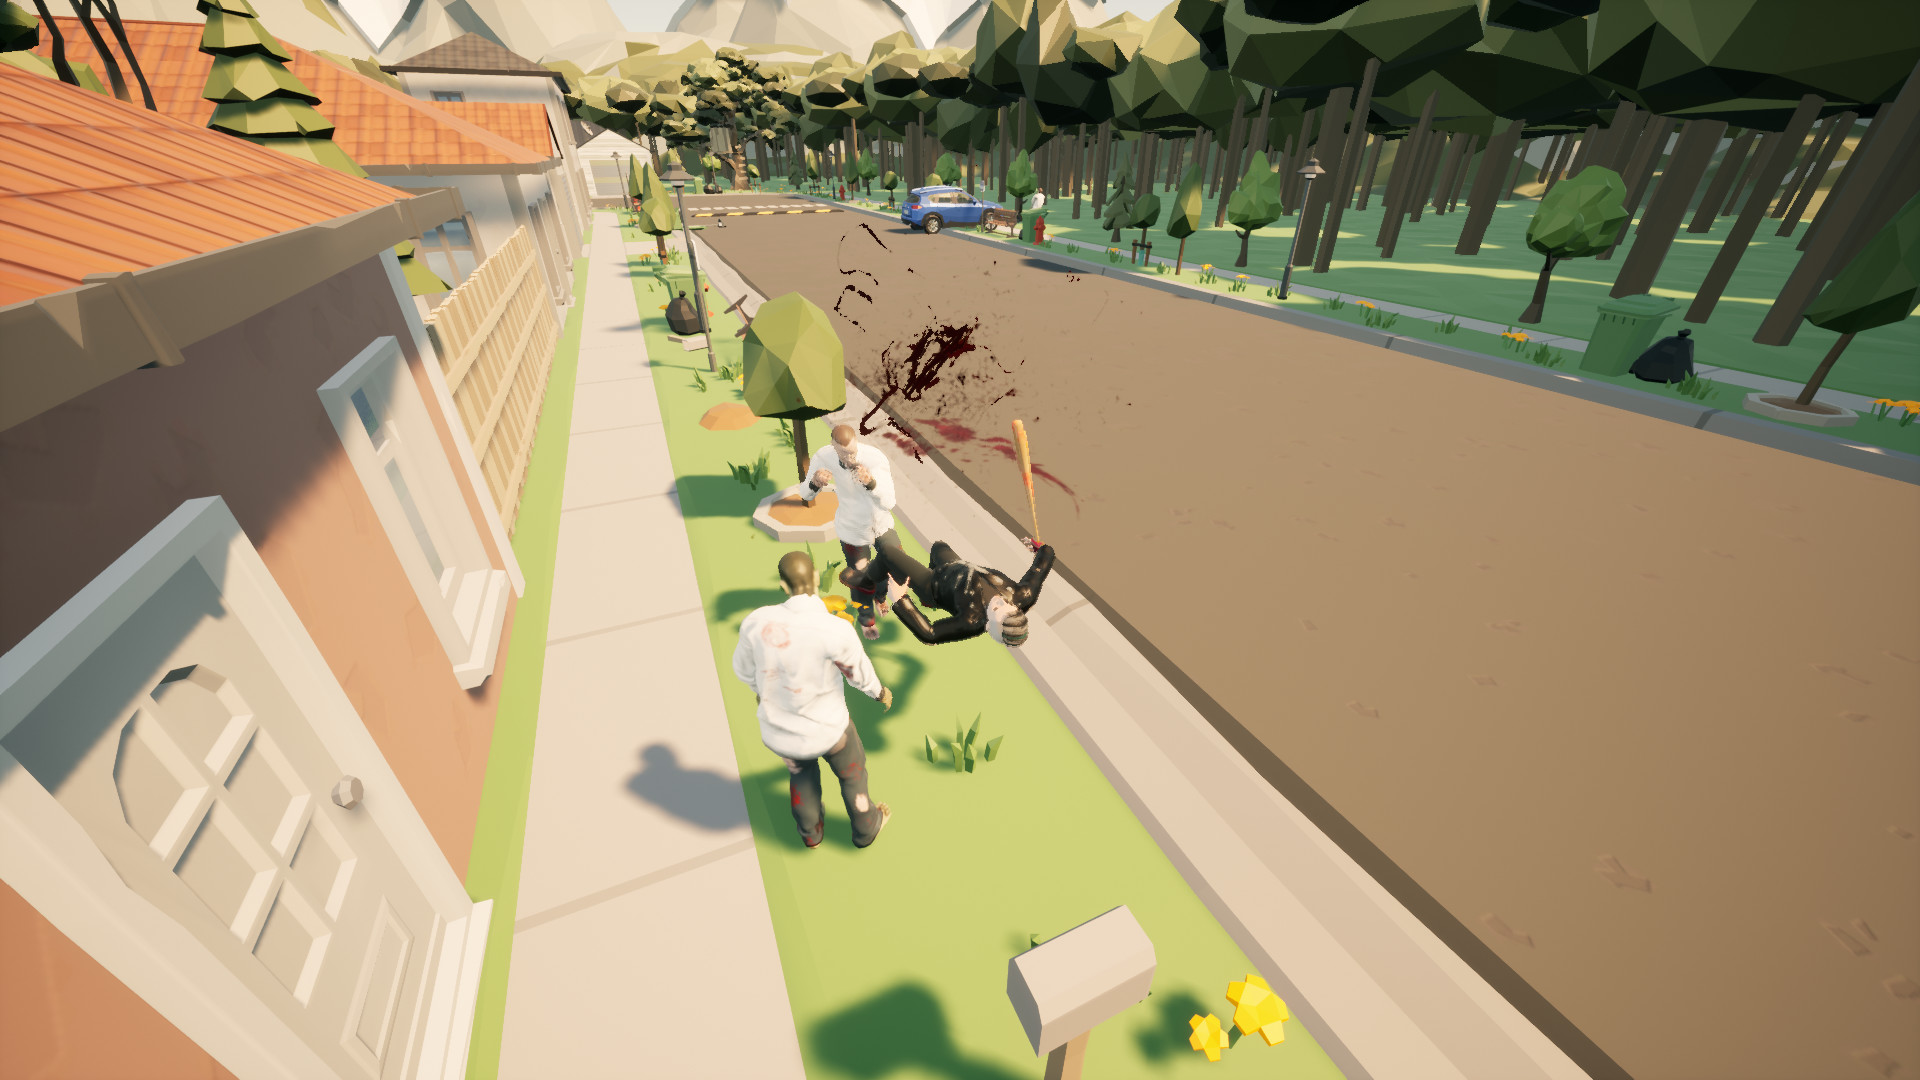 Town Fall Zombie screenshot